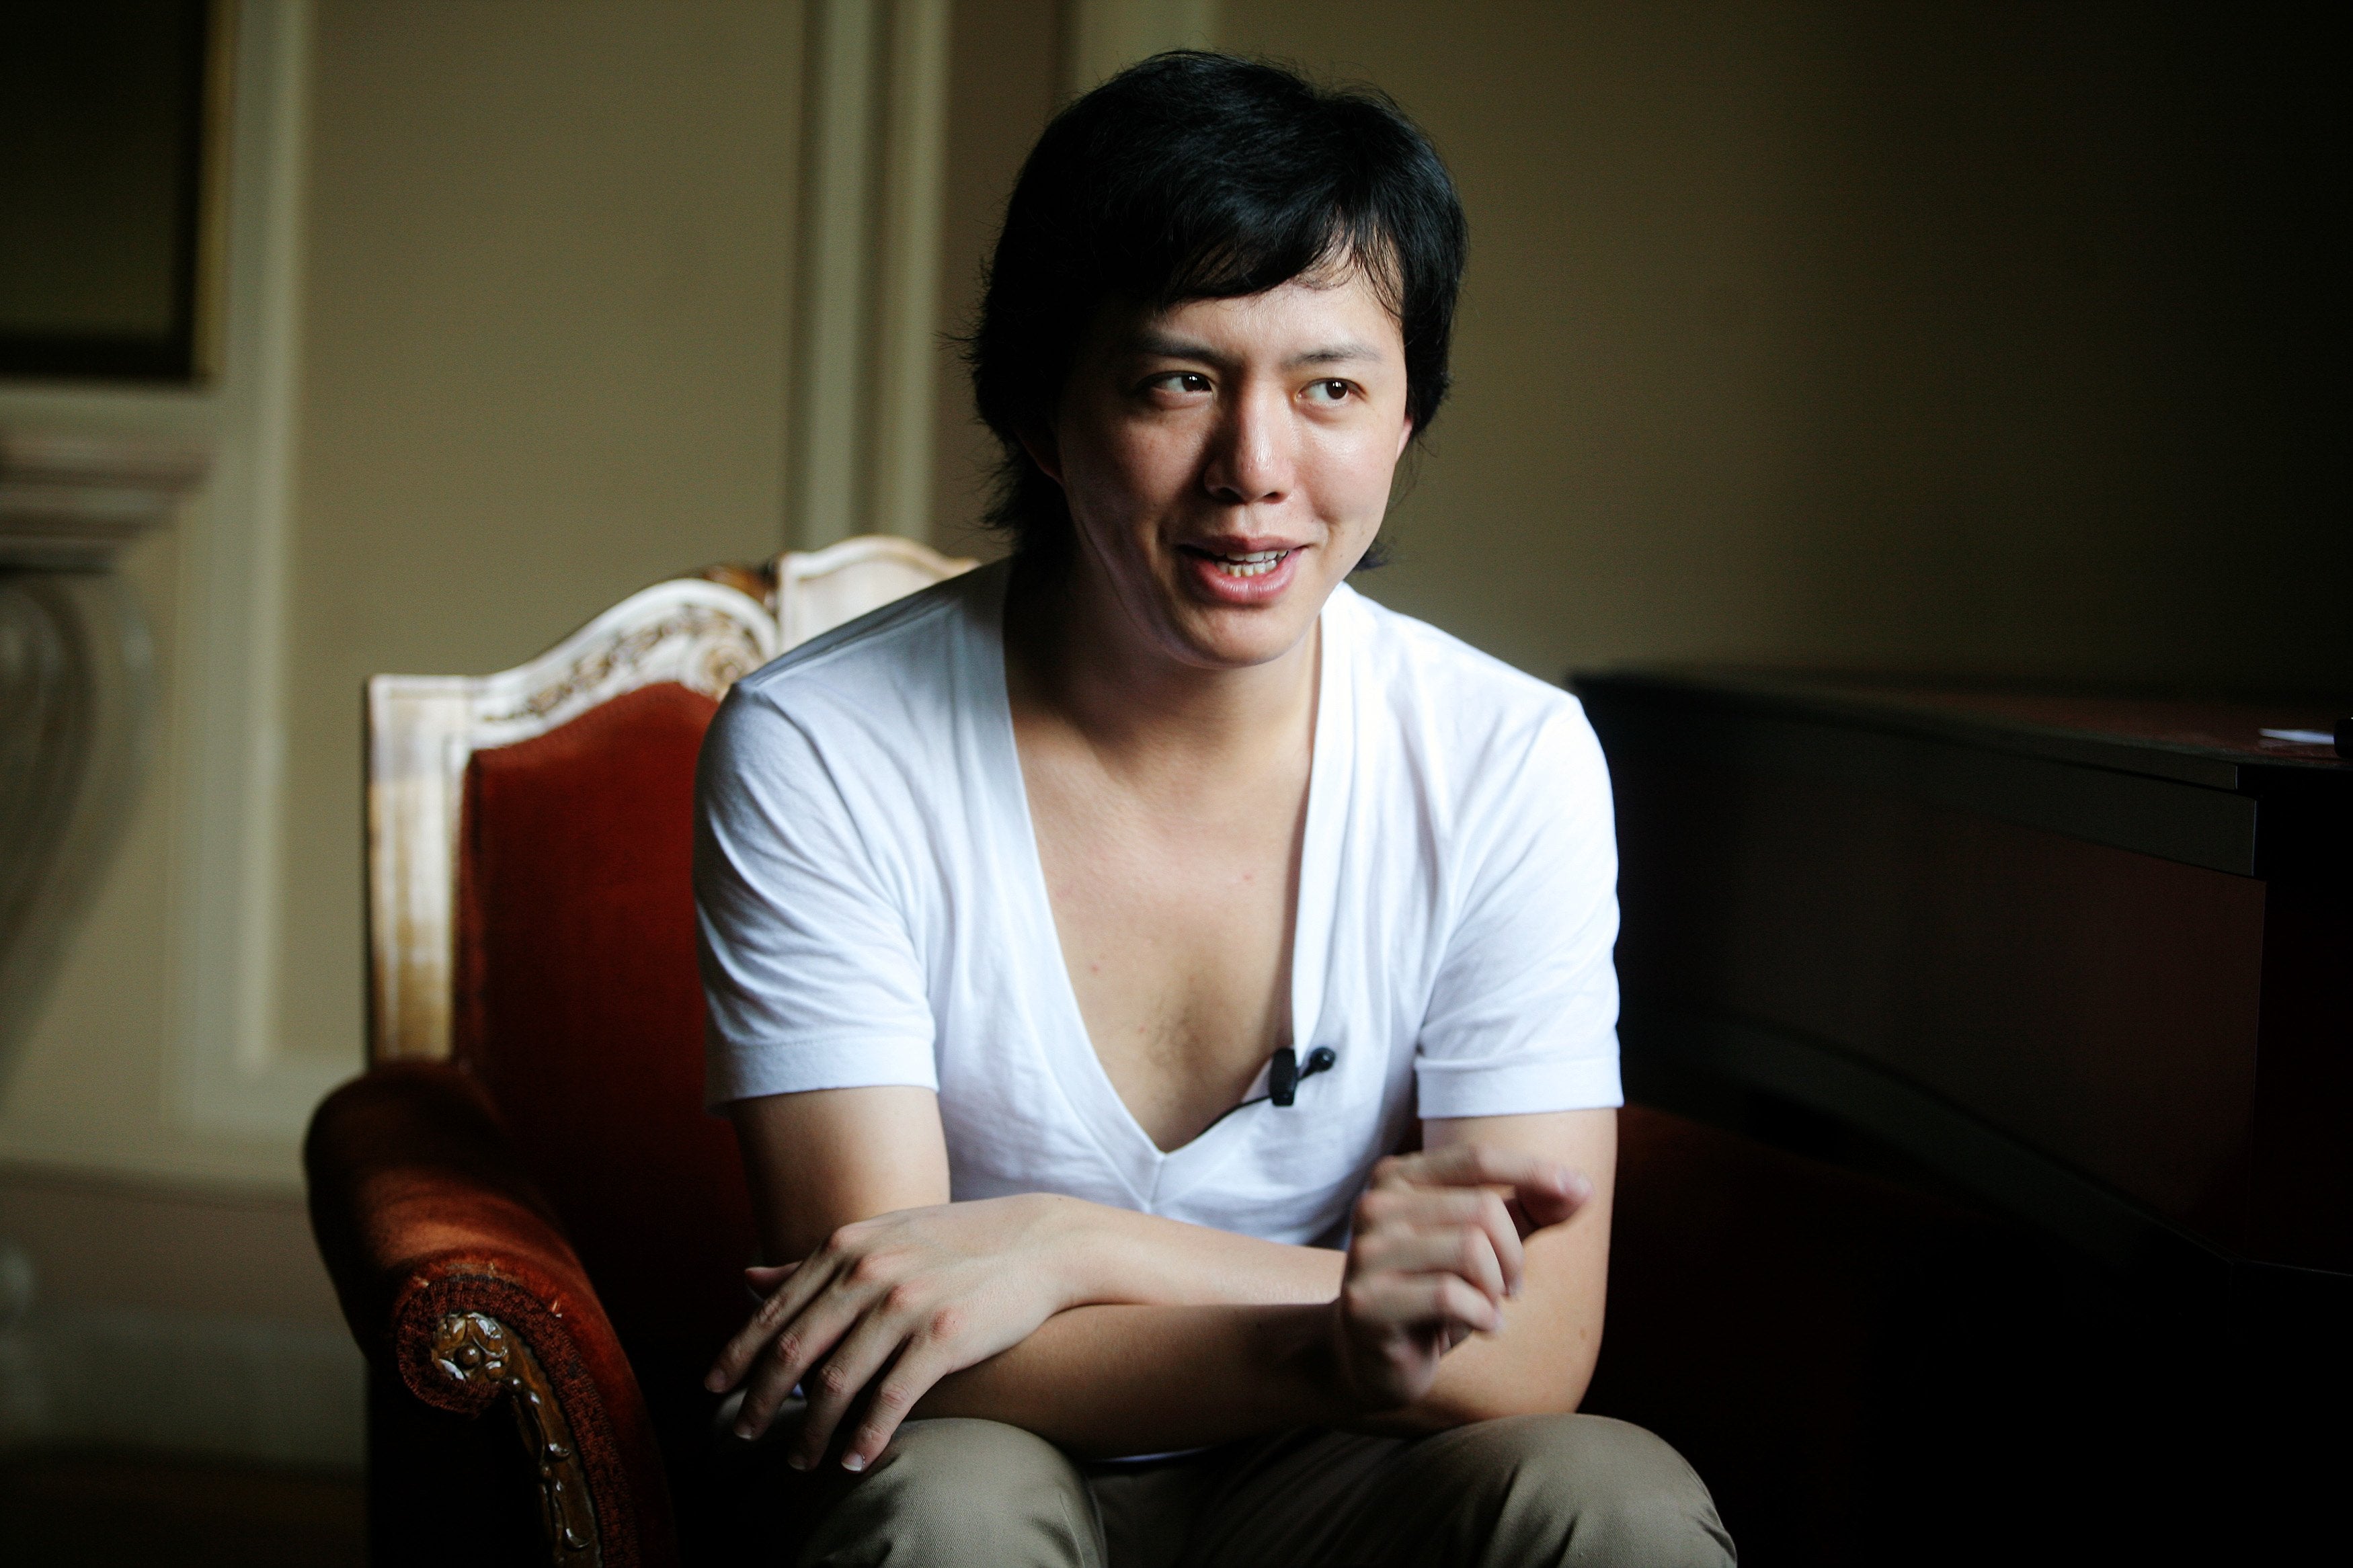 Chinese pianist Li Yundi